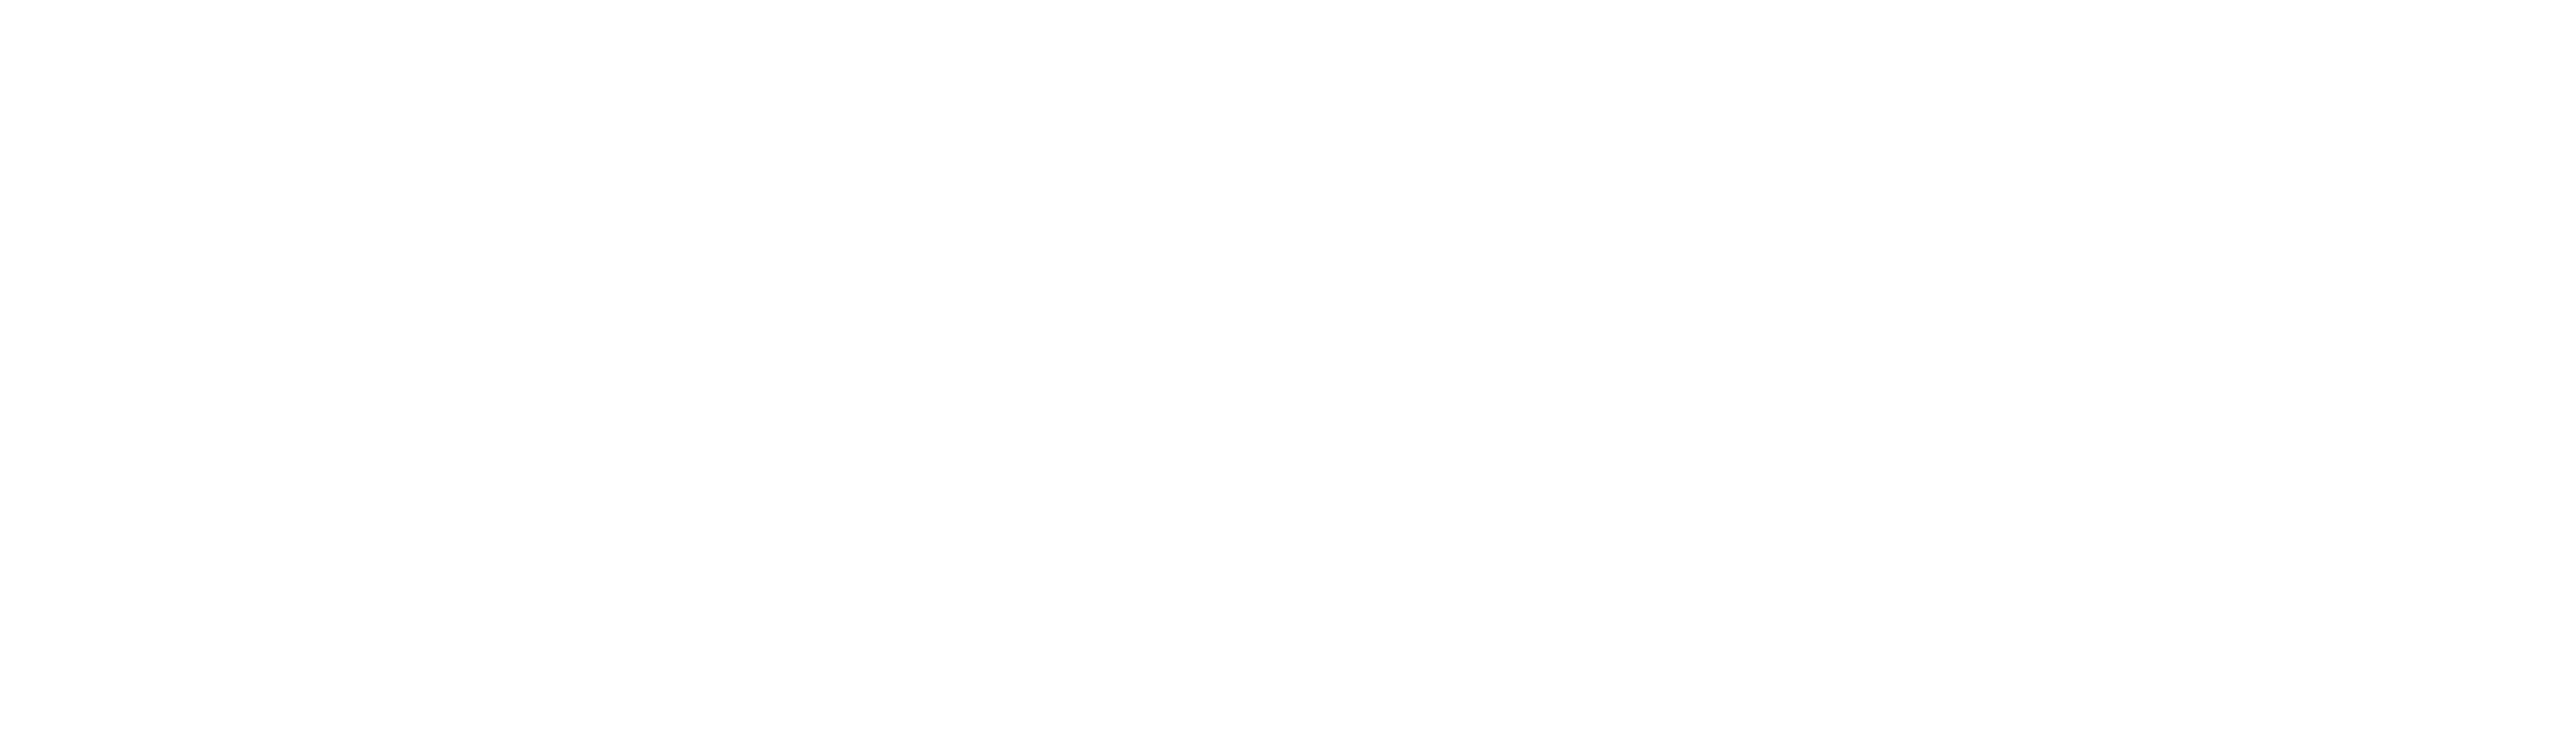 logo blossom